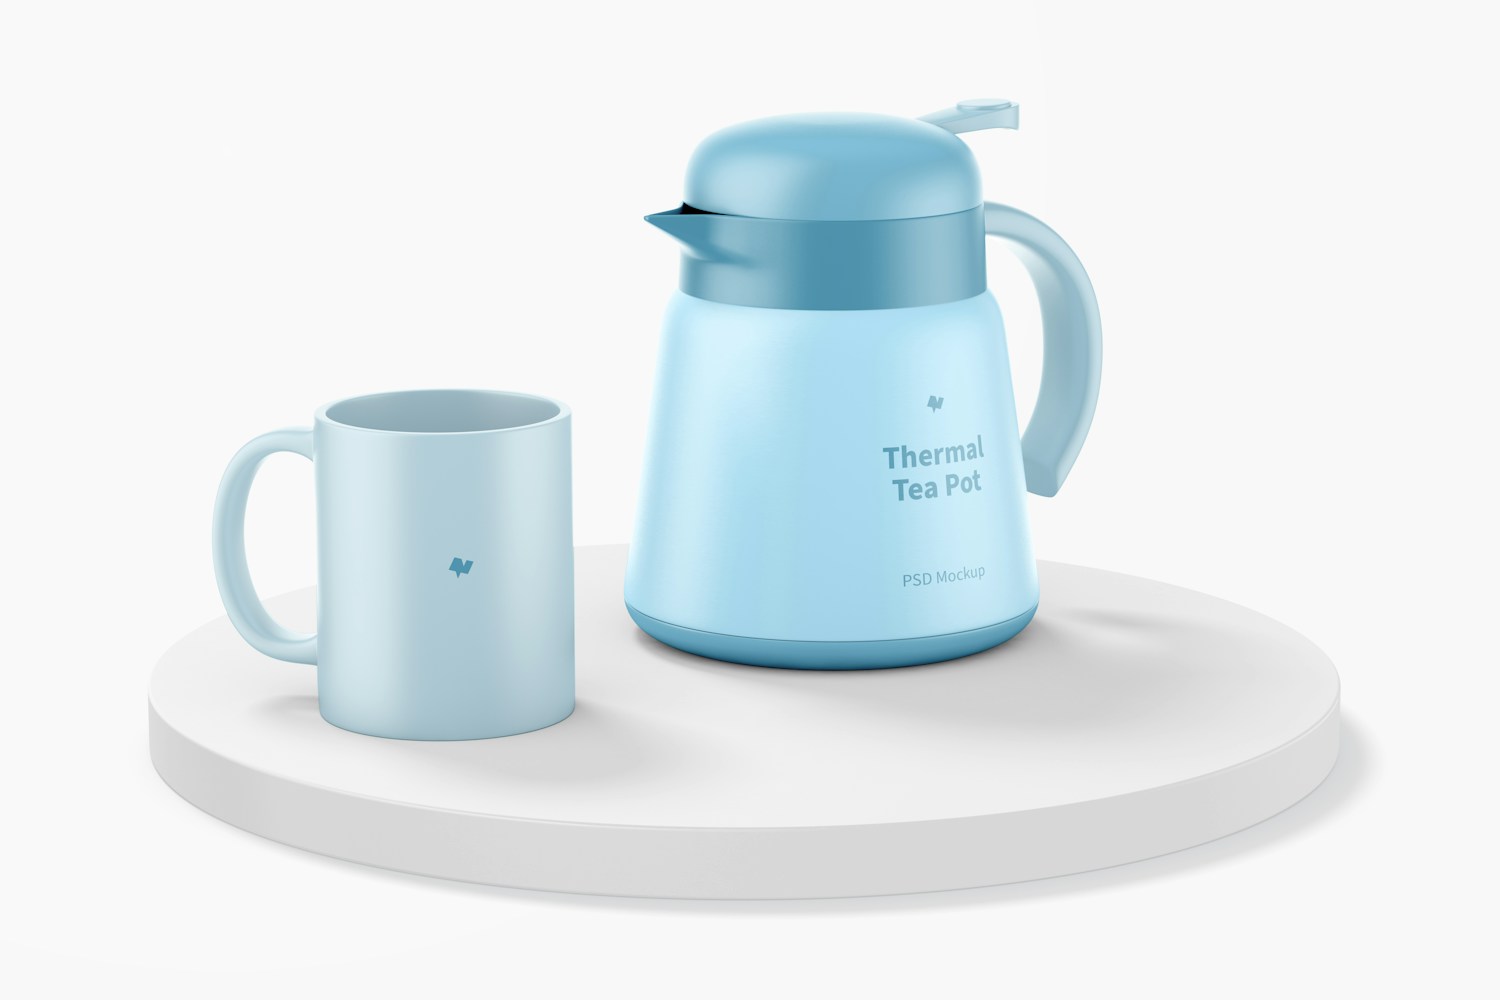 Thermal Tea Pot with Mug Mockup